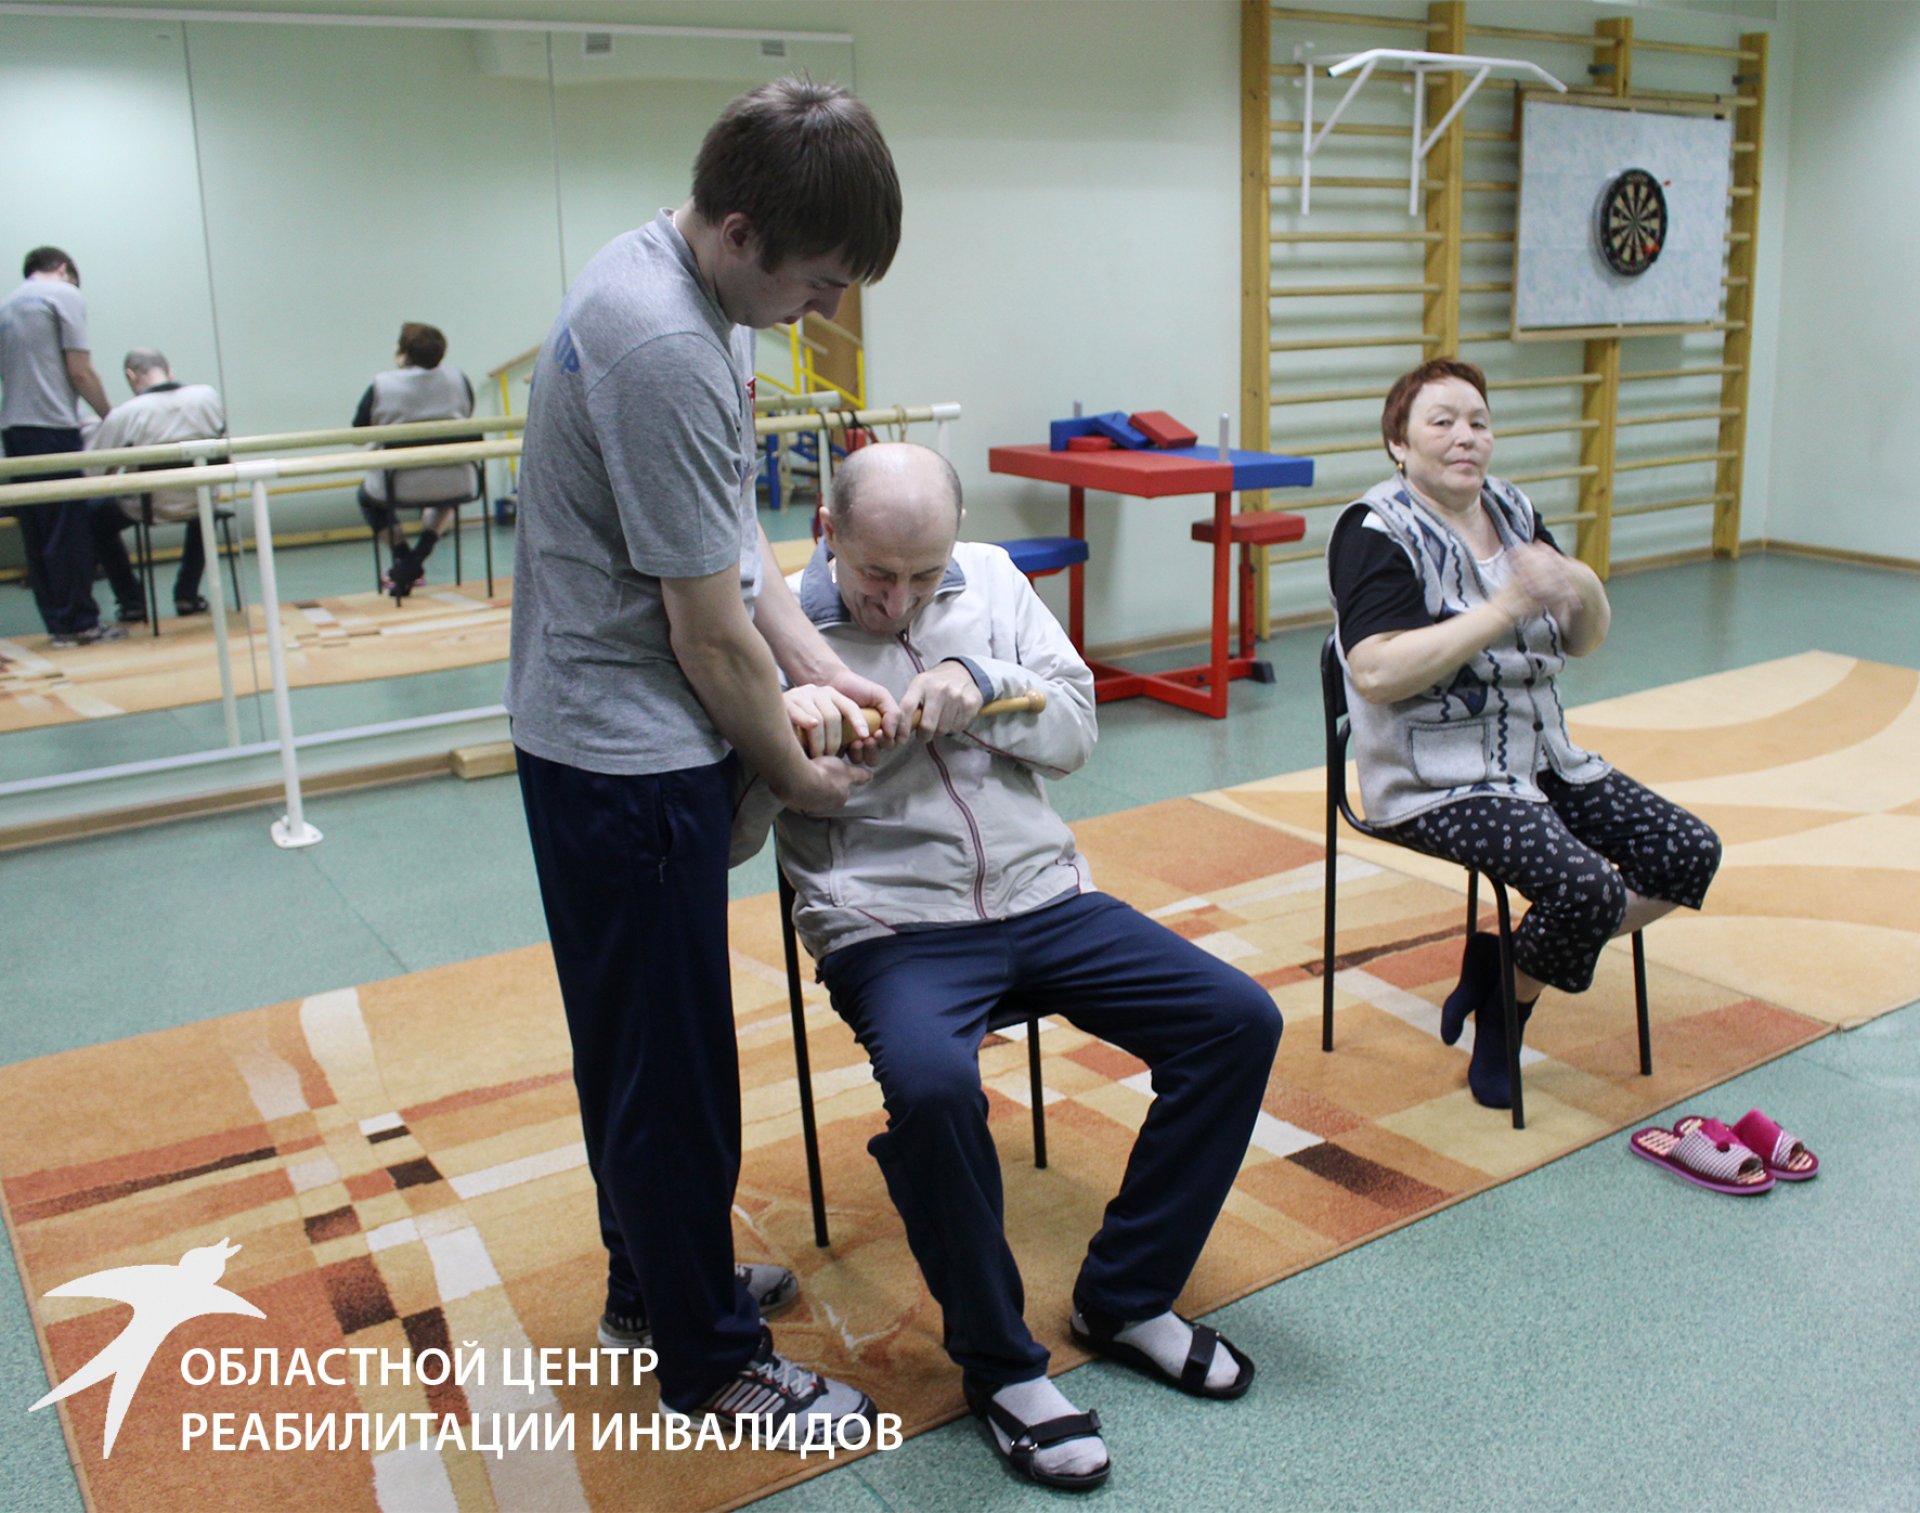 Областной центр реабилитации инвалидов Екатеринбург